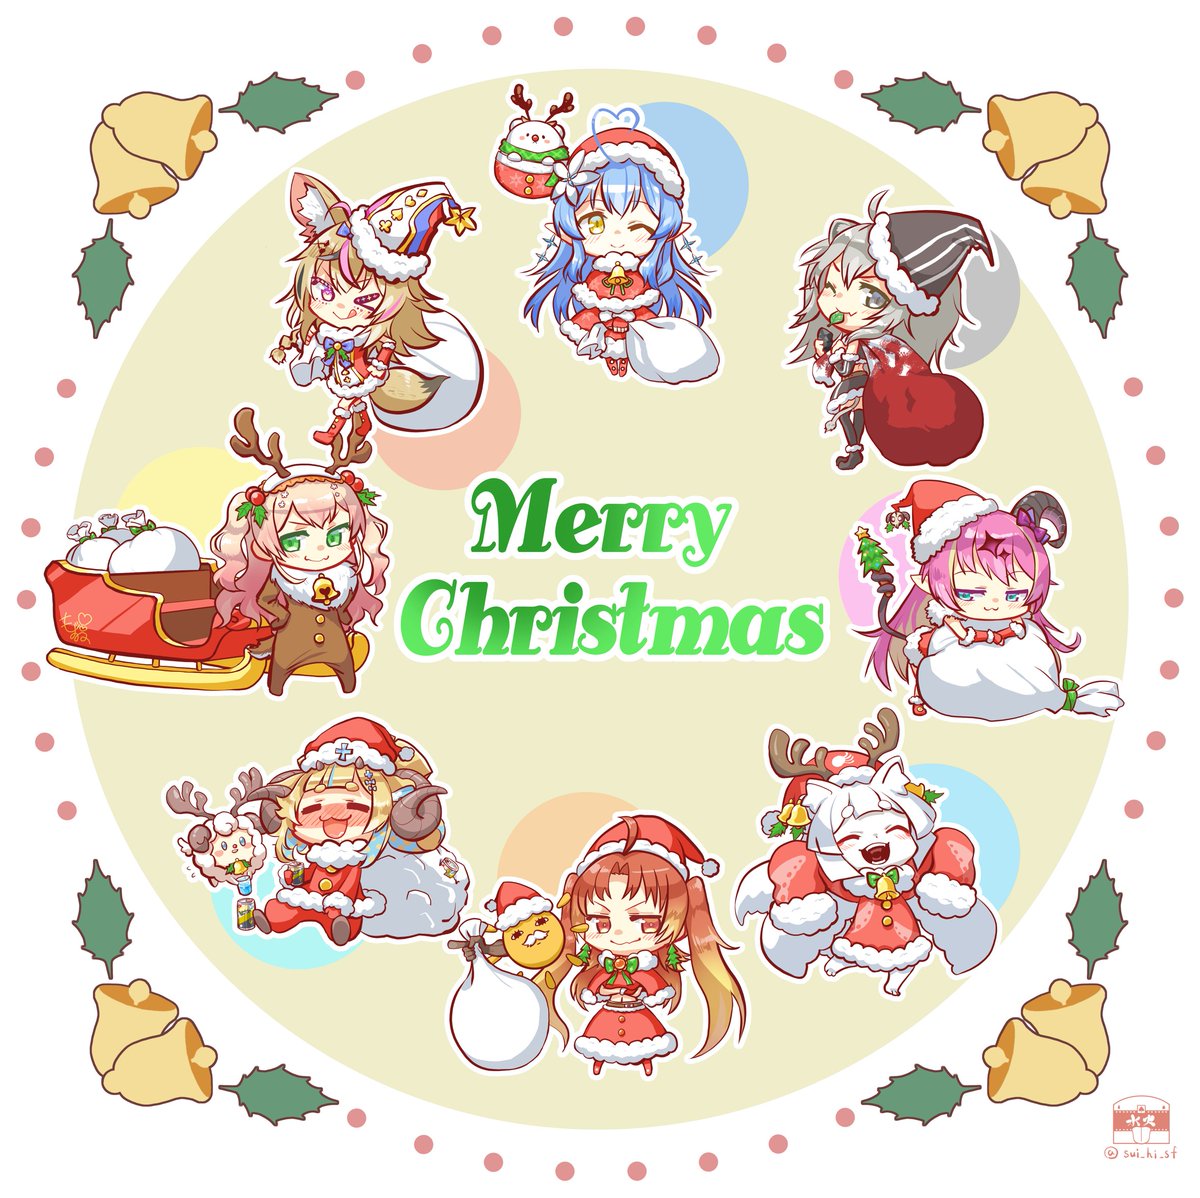 momosuzu nene ,omaru polka ,shishiro botan ,yukihana lamy santa hat multiple girls hat horns christmas blonde hair santa costume  illustration images